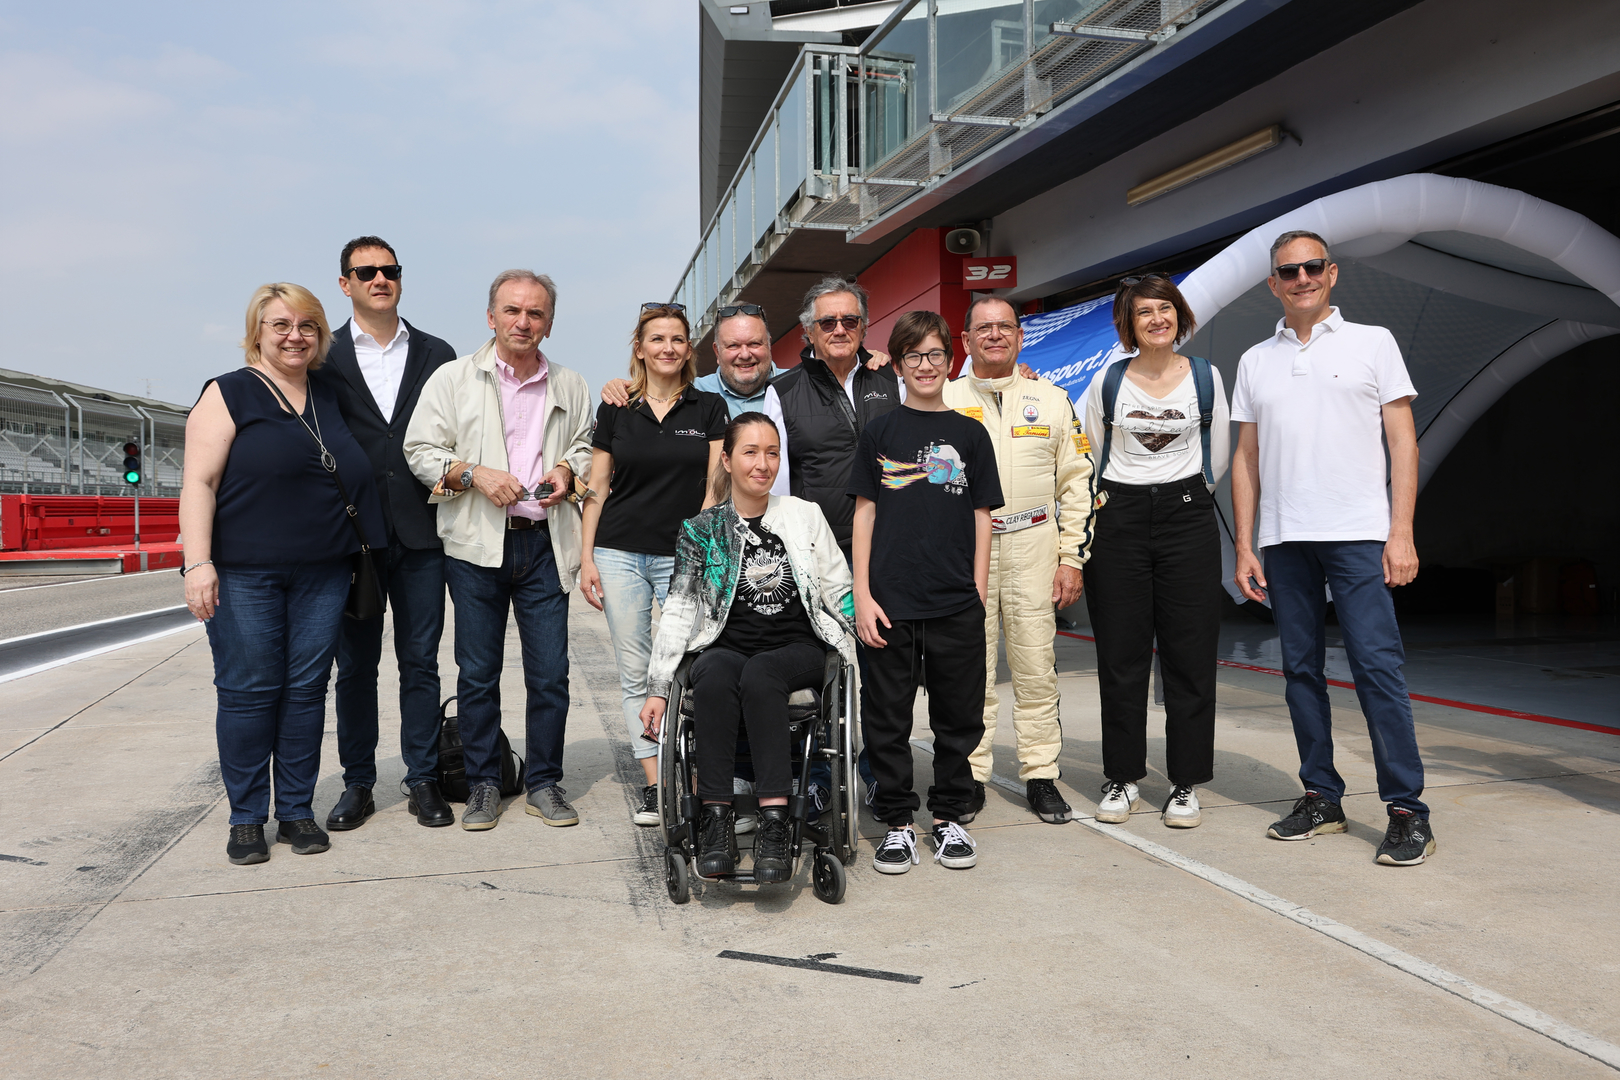 Club Regazzoni: in autodromo evento di ripartenza nel segno dell’inclusività